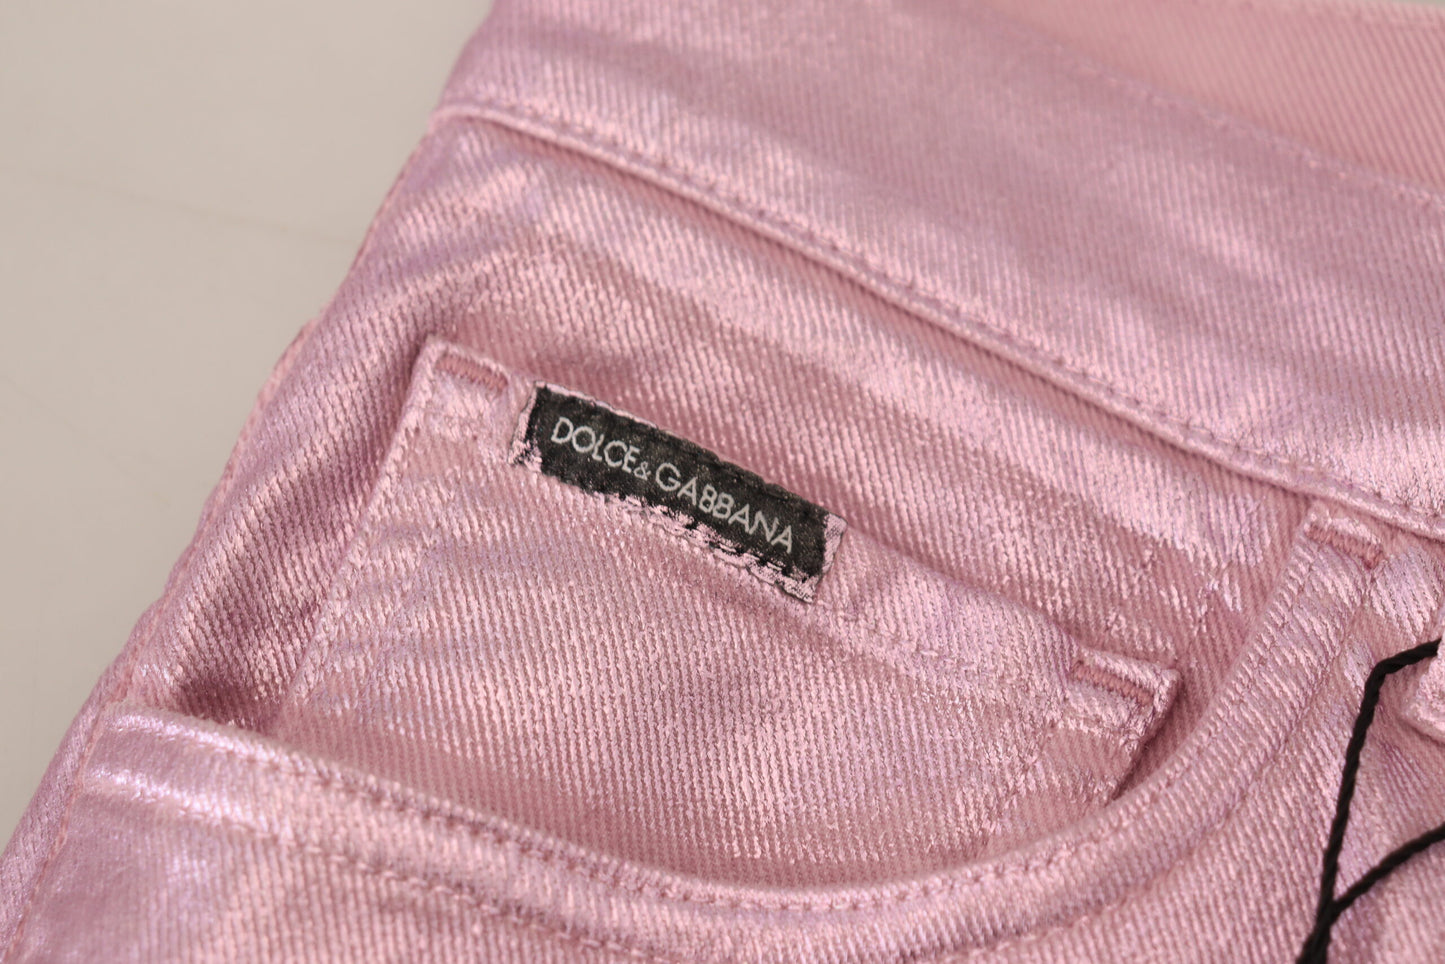 Metallic Pink Loose Denim Jeans